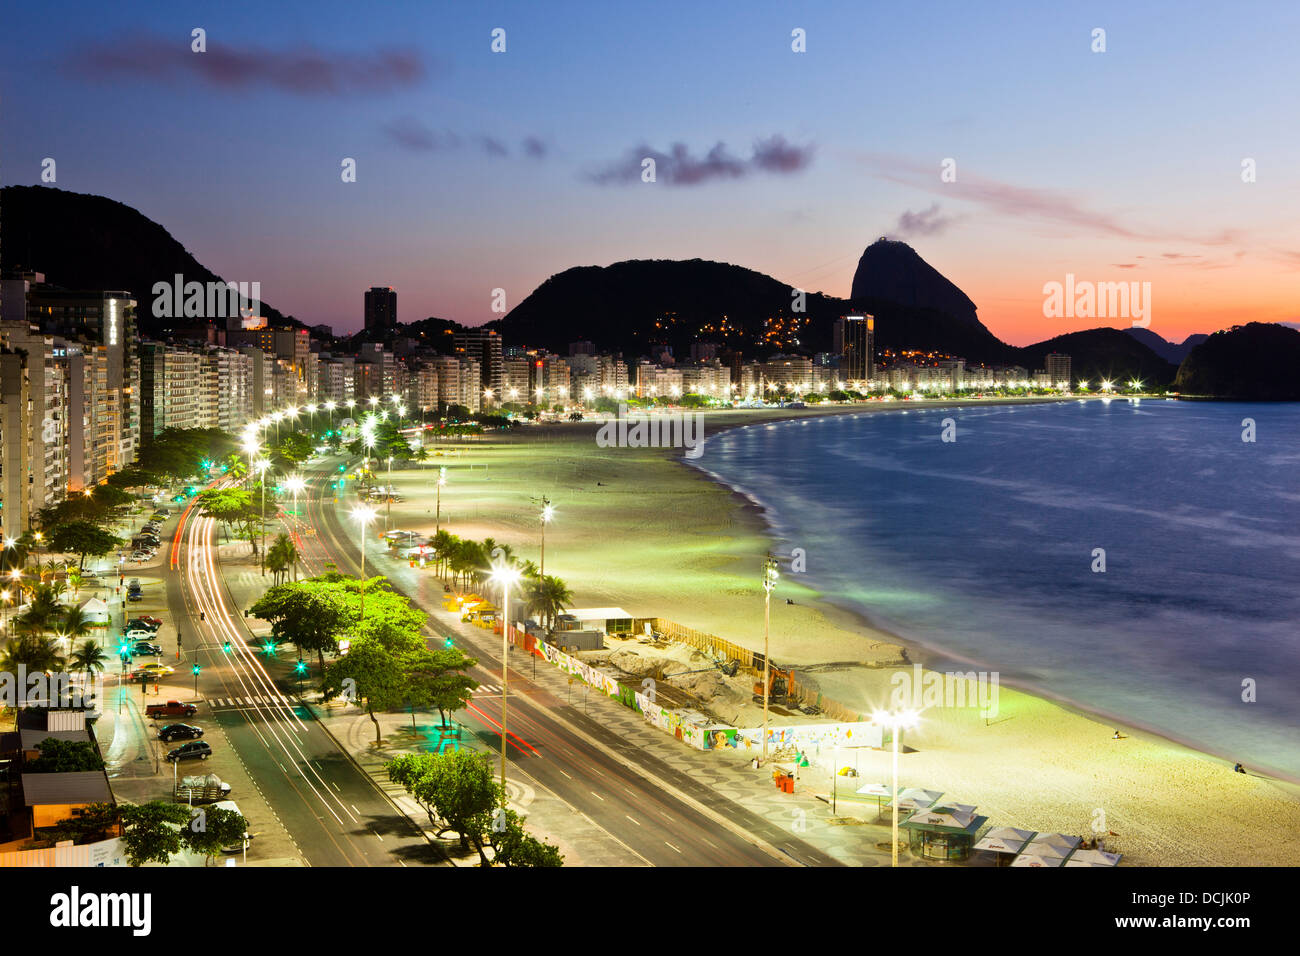 Sonnenaufgang am Strand der Copacabana, Rio De Janeiro, Brasilien. Atlantica Avenue, Zuckerhut im Hintergrund. Stockfoto